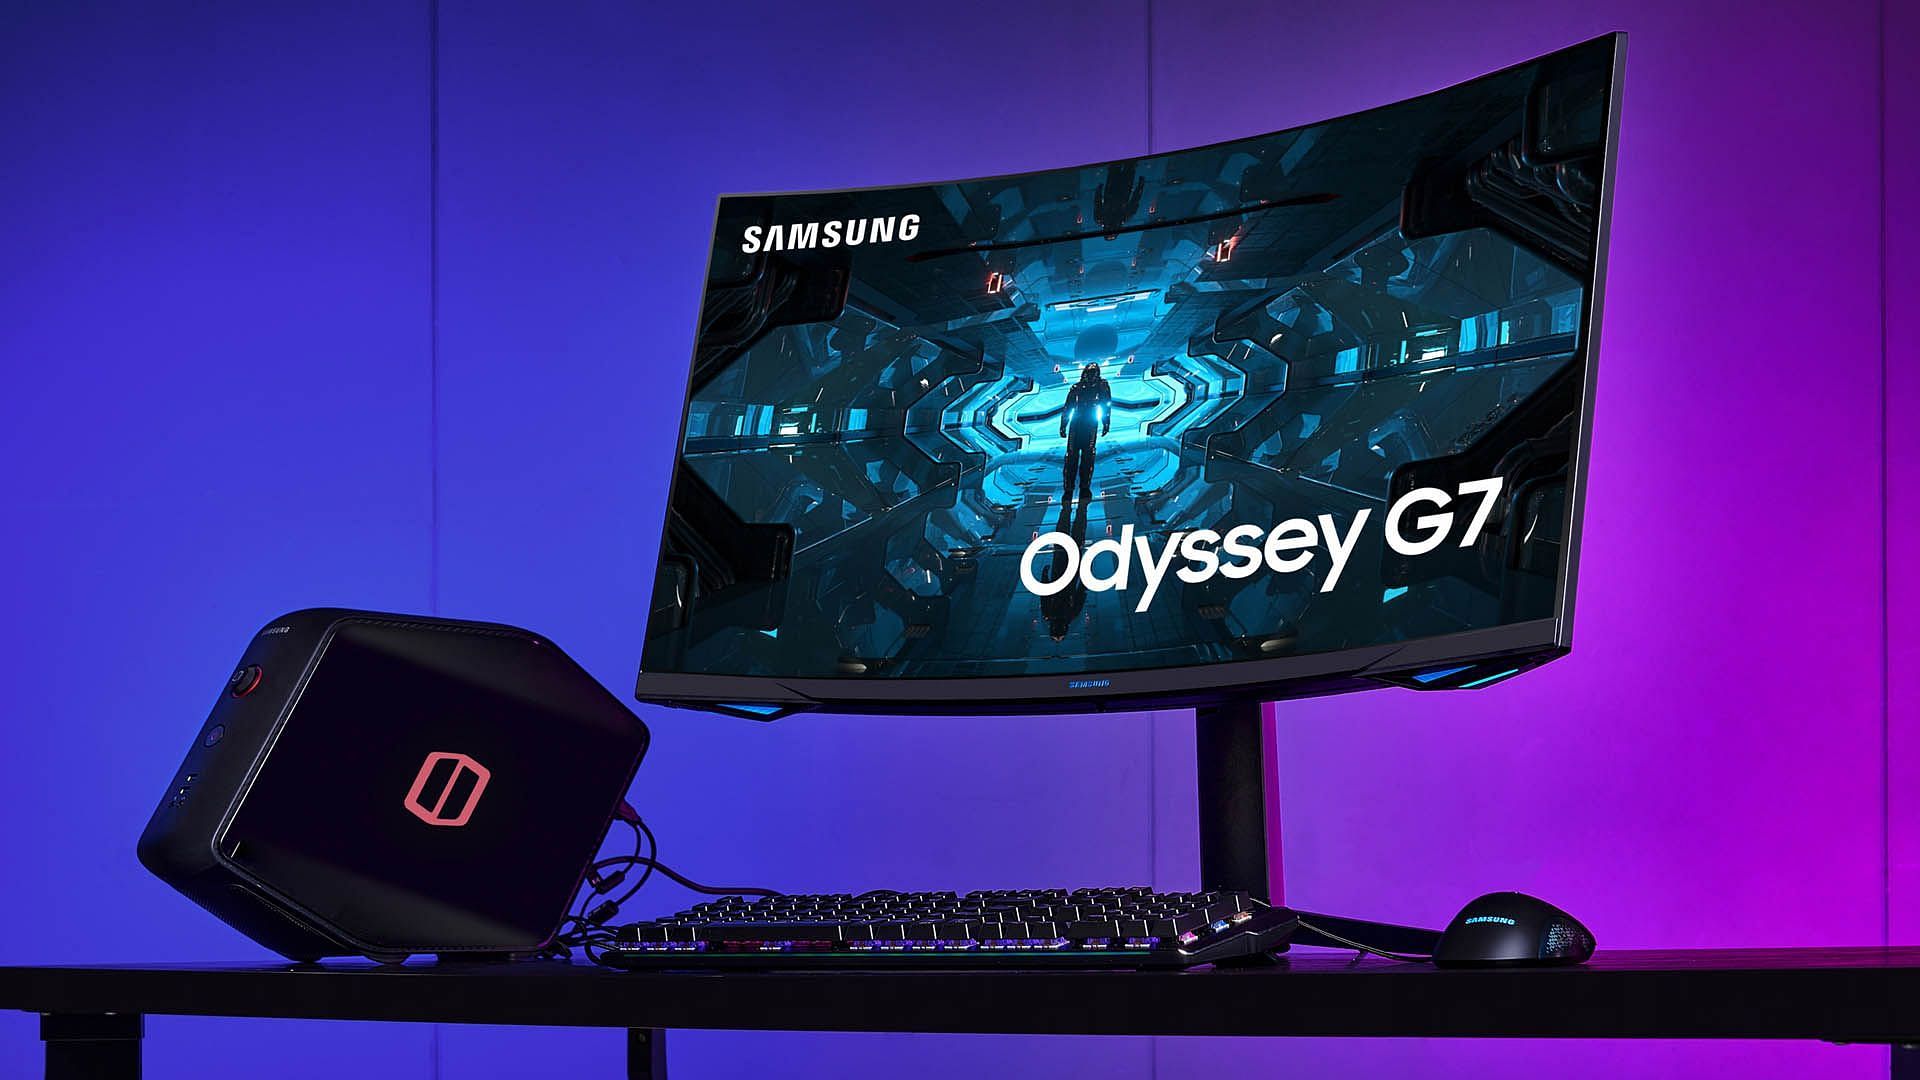 Samsung Odyssey G7 (Image via Samsung)